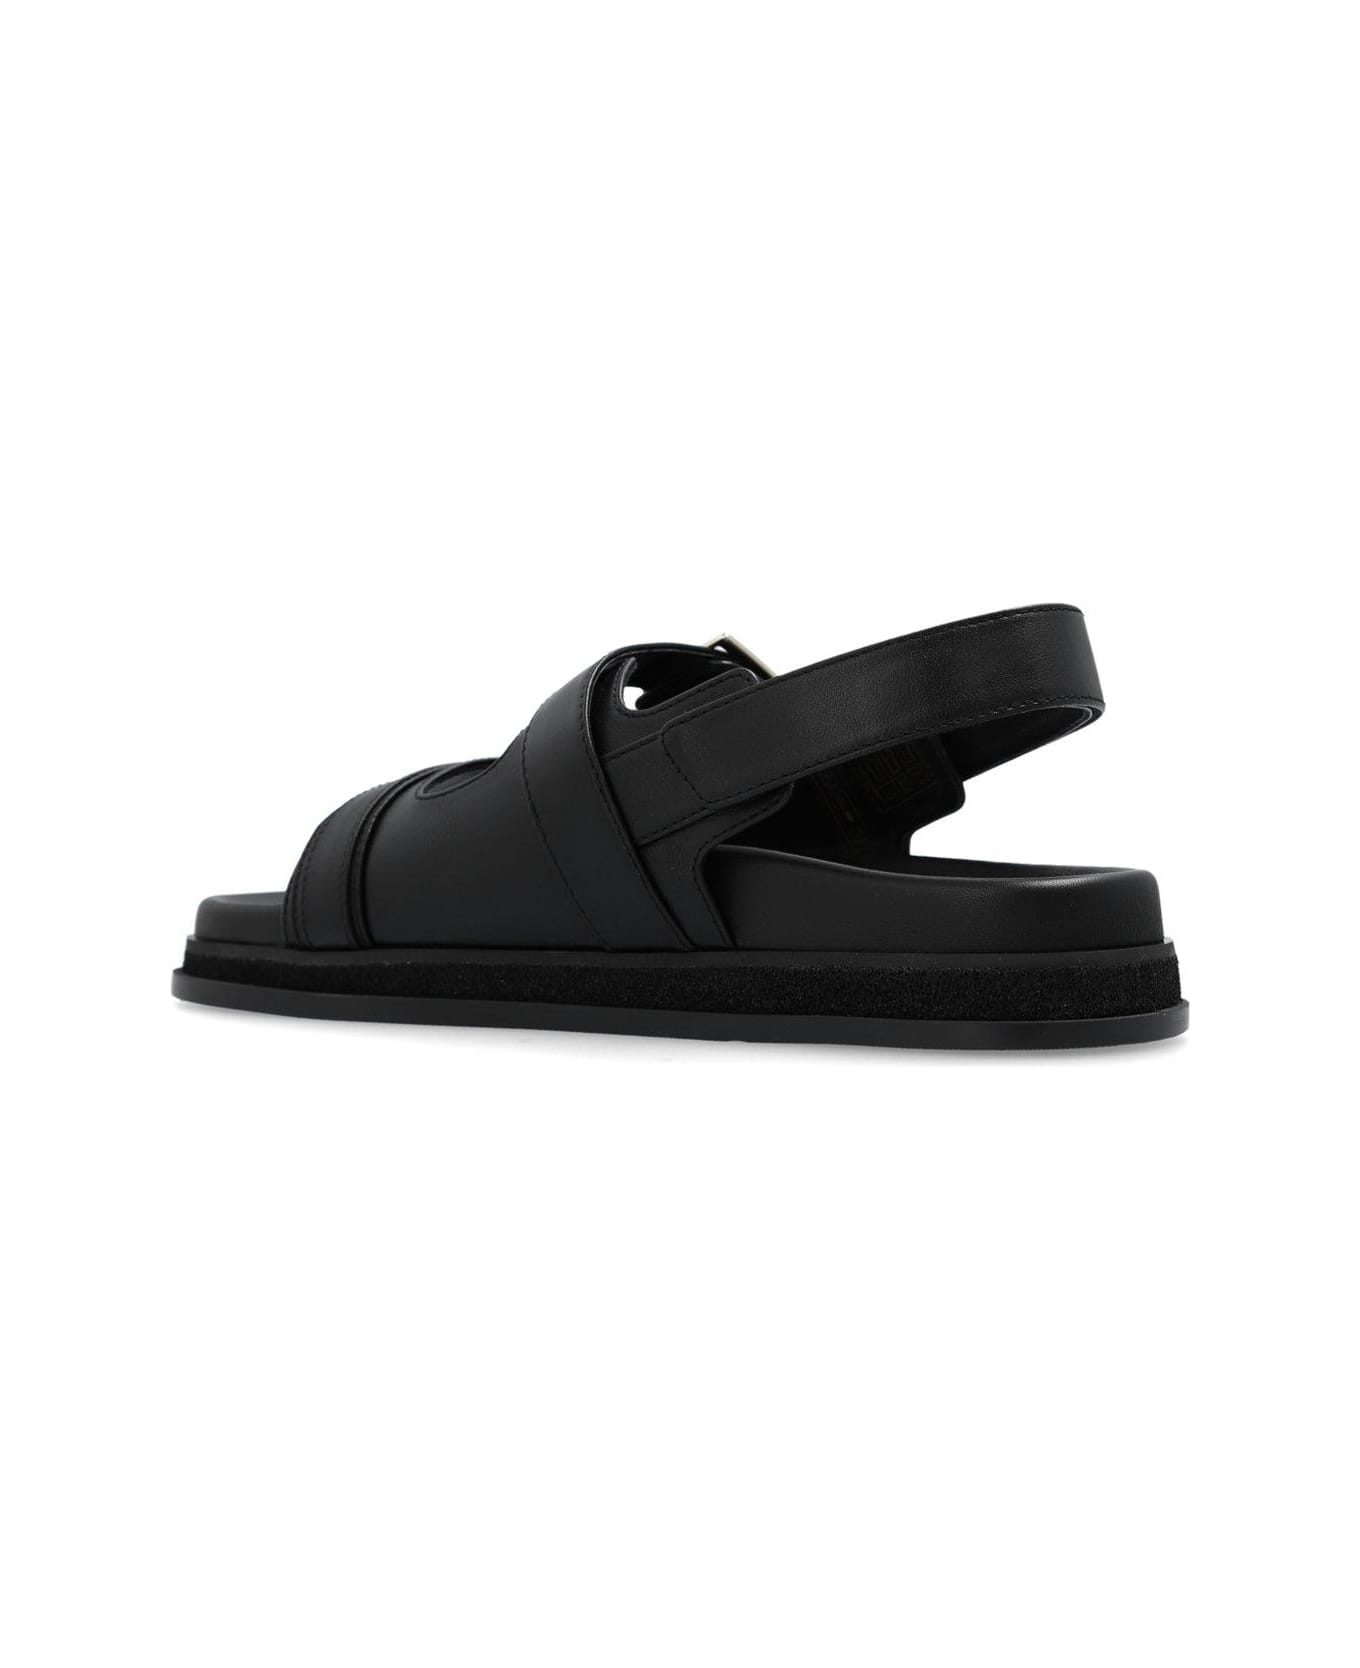 Jimmy Choo Flat Sandals - Black サンダル